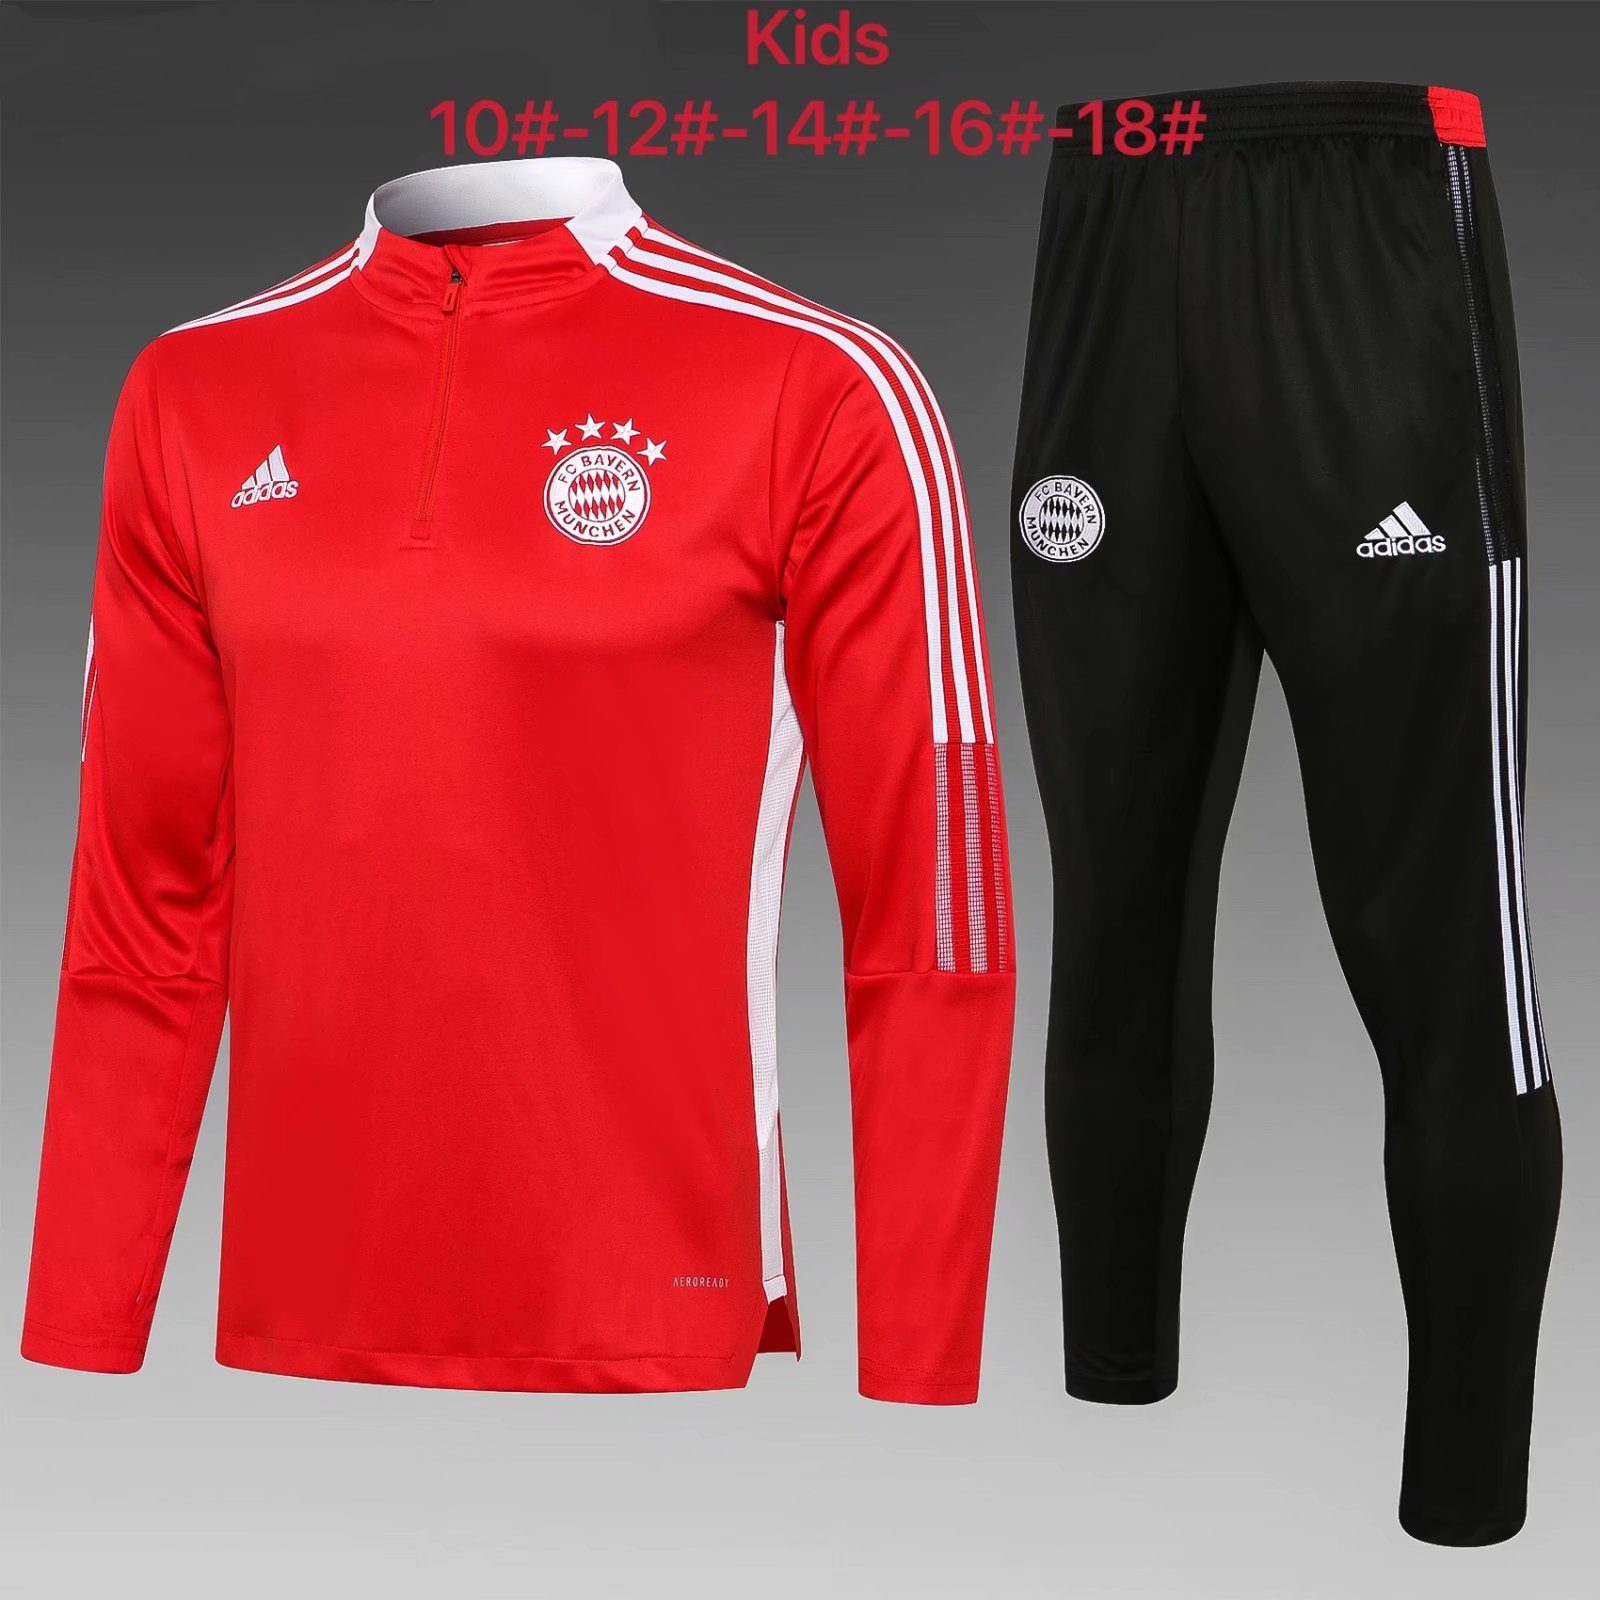 2021-22 Bayern München Red Kids/Youth Soccer Tracksuit Uniform-816